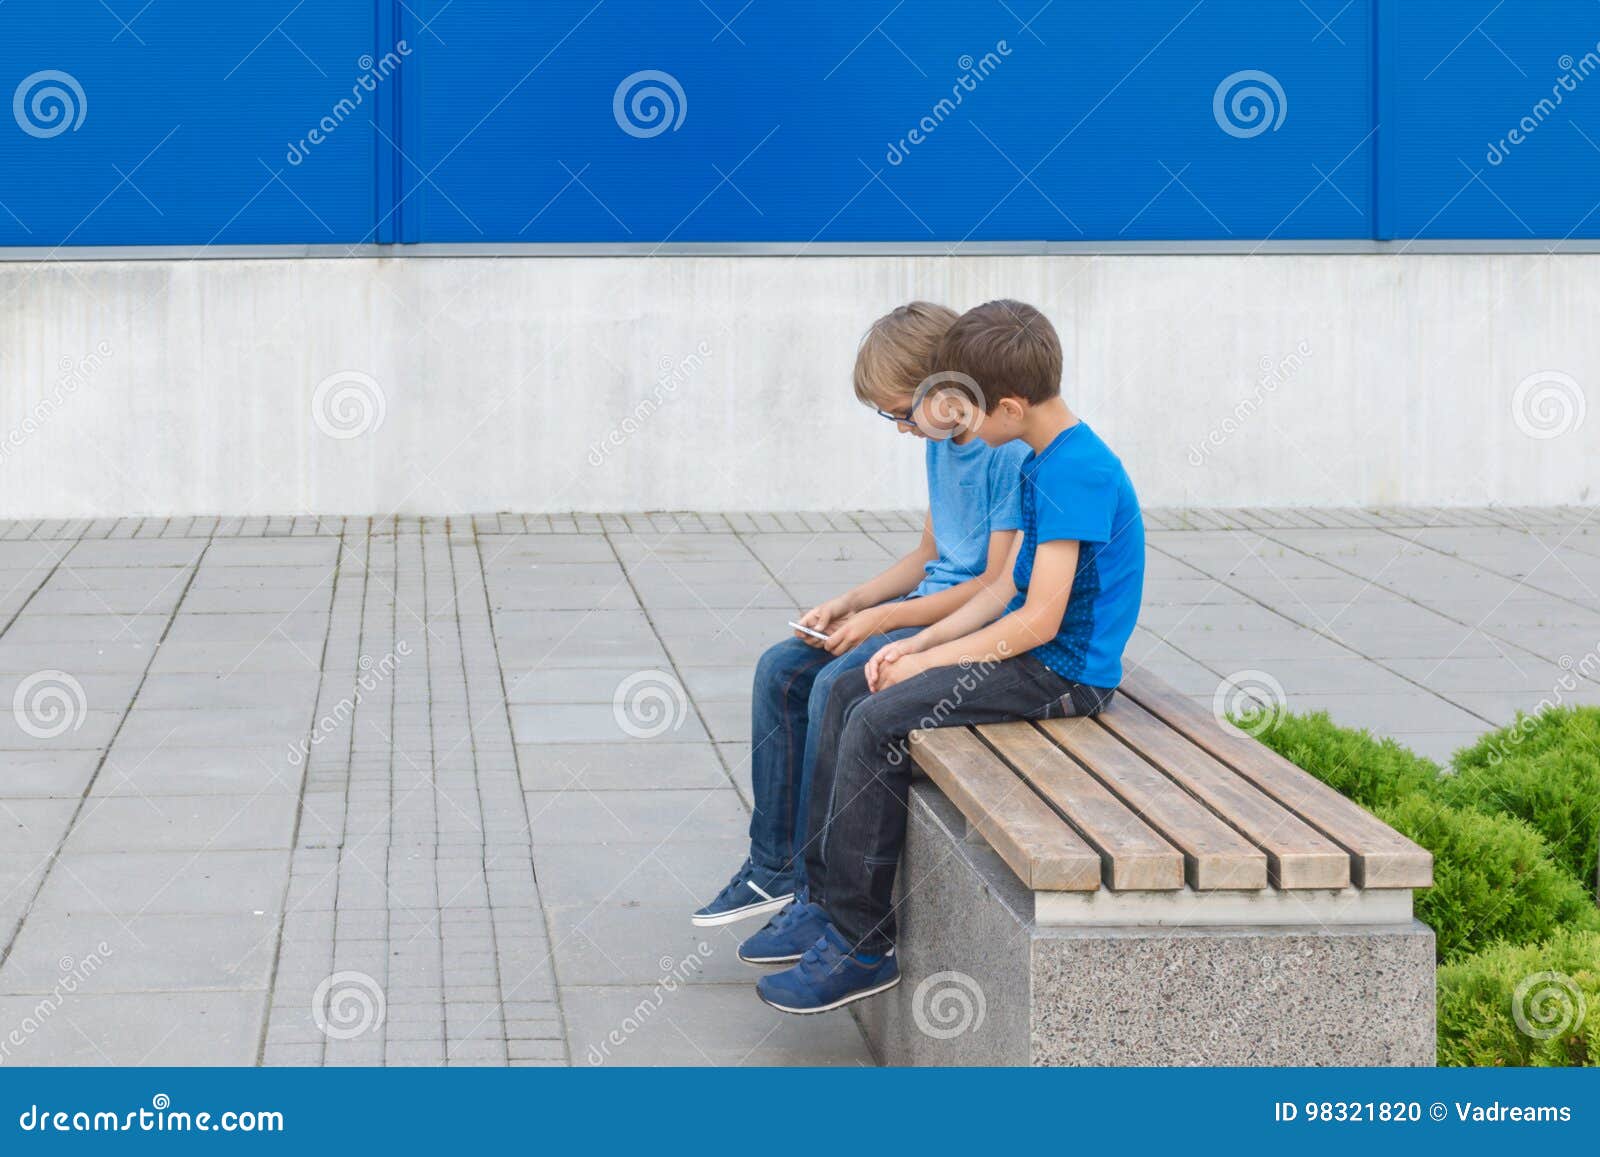 На ступеньку вскакивает хлопчик. Мальчик сидит на скамейке. Мальчик сидит на скамье. Два мальчика на скамейке. Два подростка сидят на скамейке.